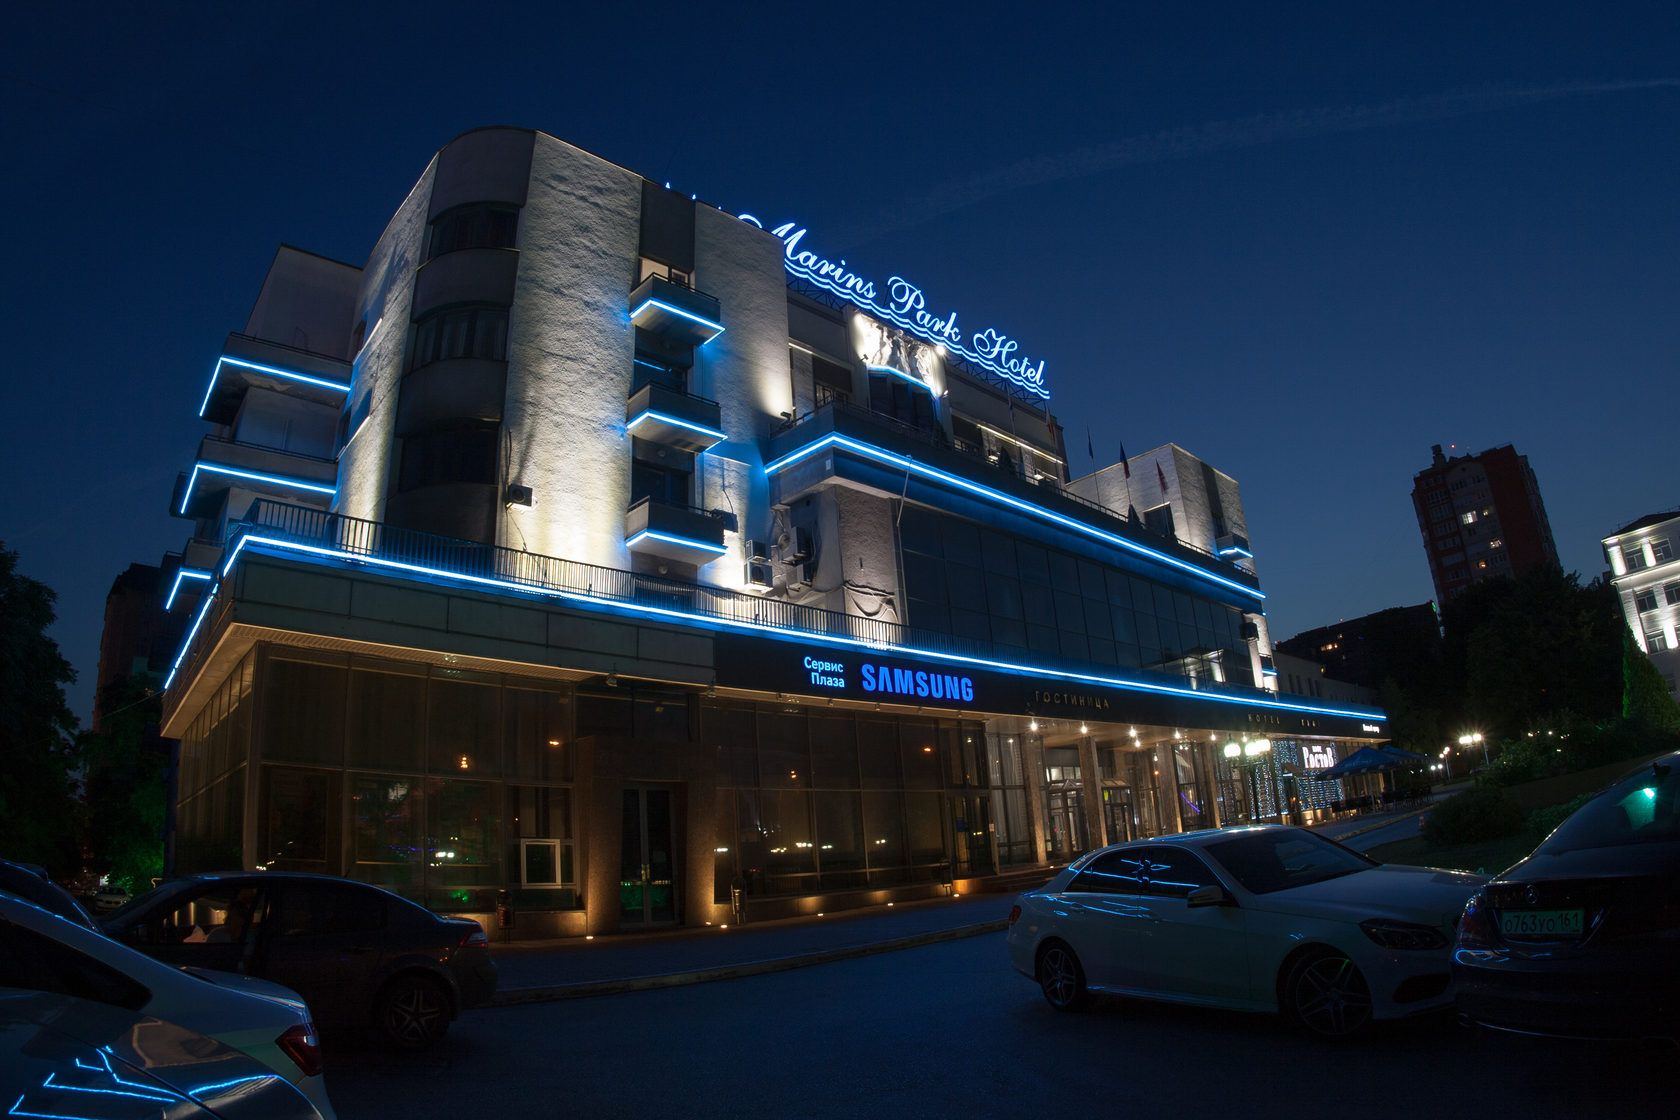 «Marins Park Hotel» - освещение культурно-развлекательного центра, г. Ростов-на-Дону, 2015